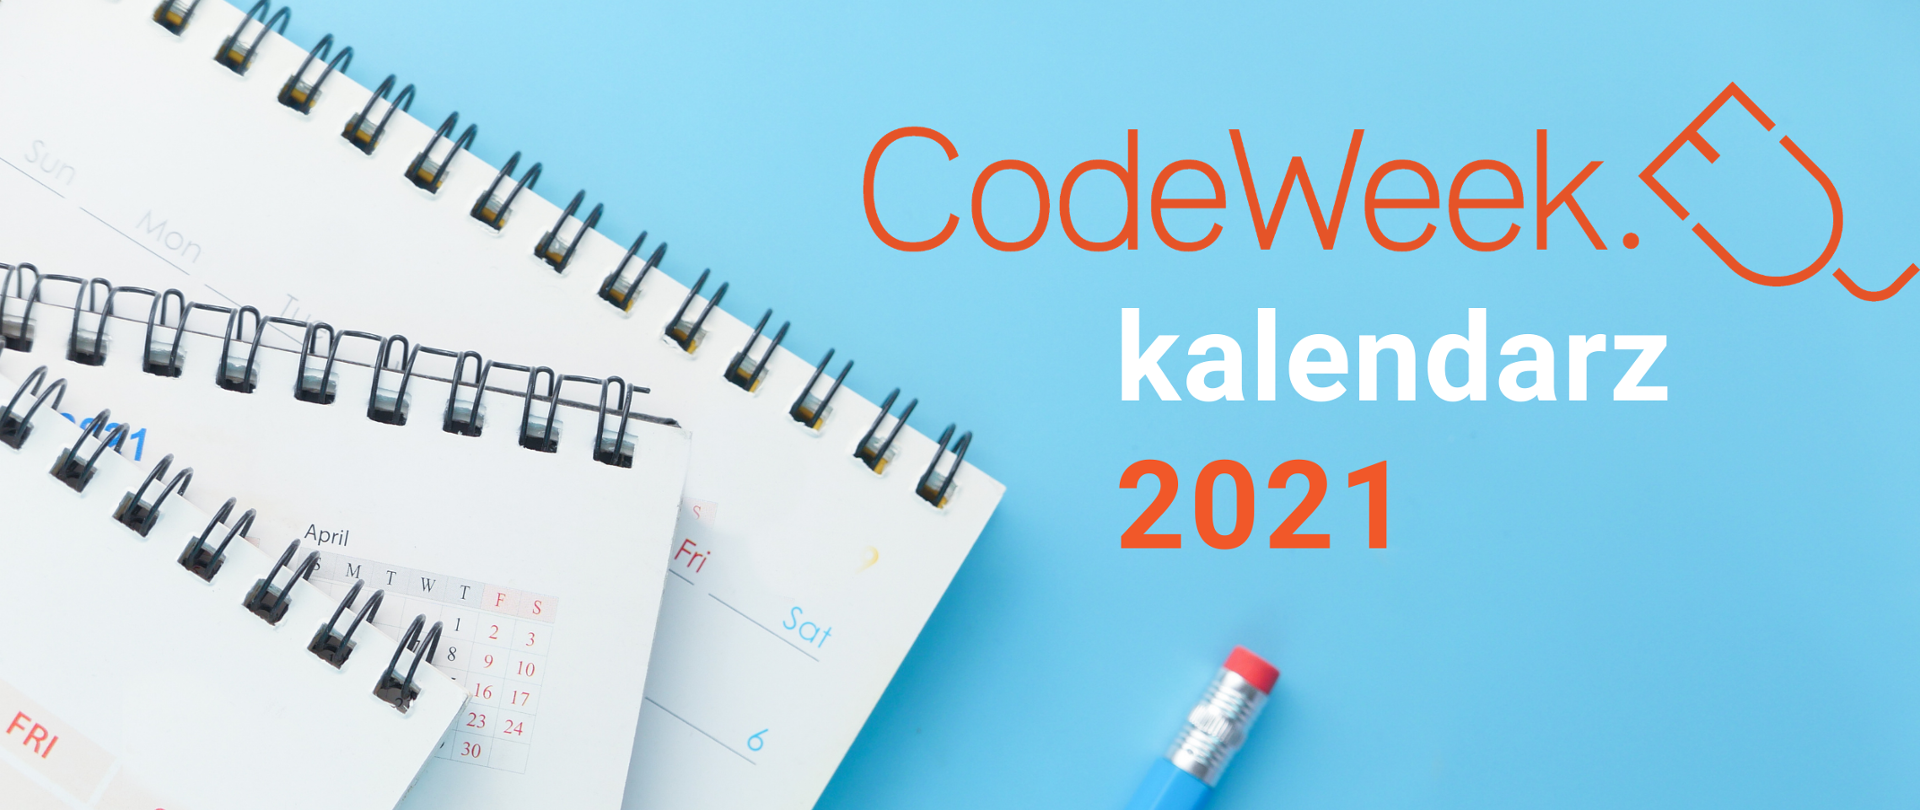 Napis "CodeWeek kalendarz 2021", niebieskie tło, na którym widzimy ołówek i skoroszyty z kartkami kalendarza.